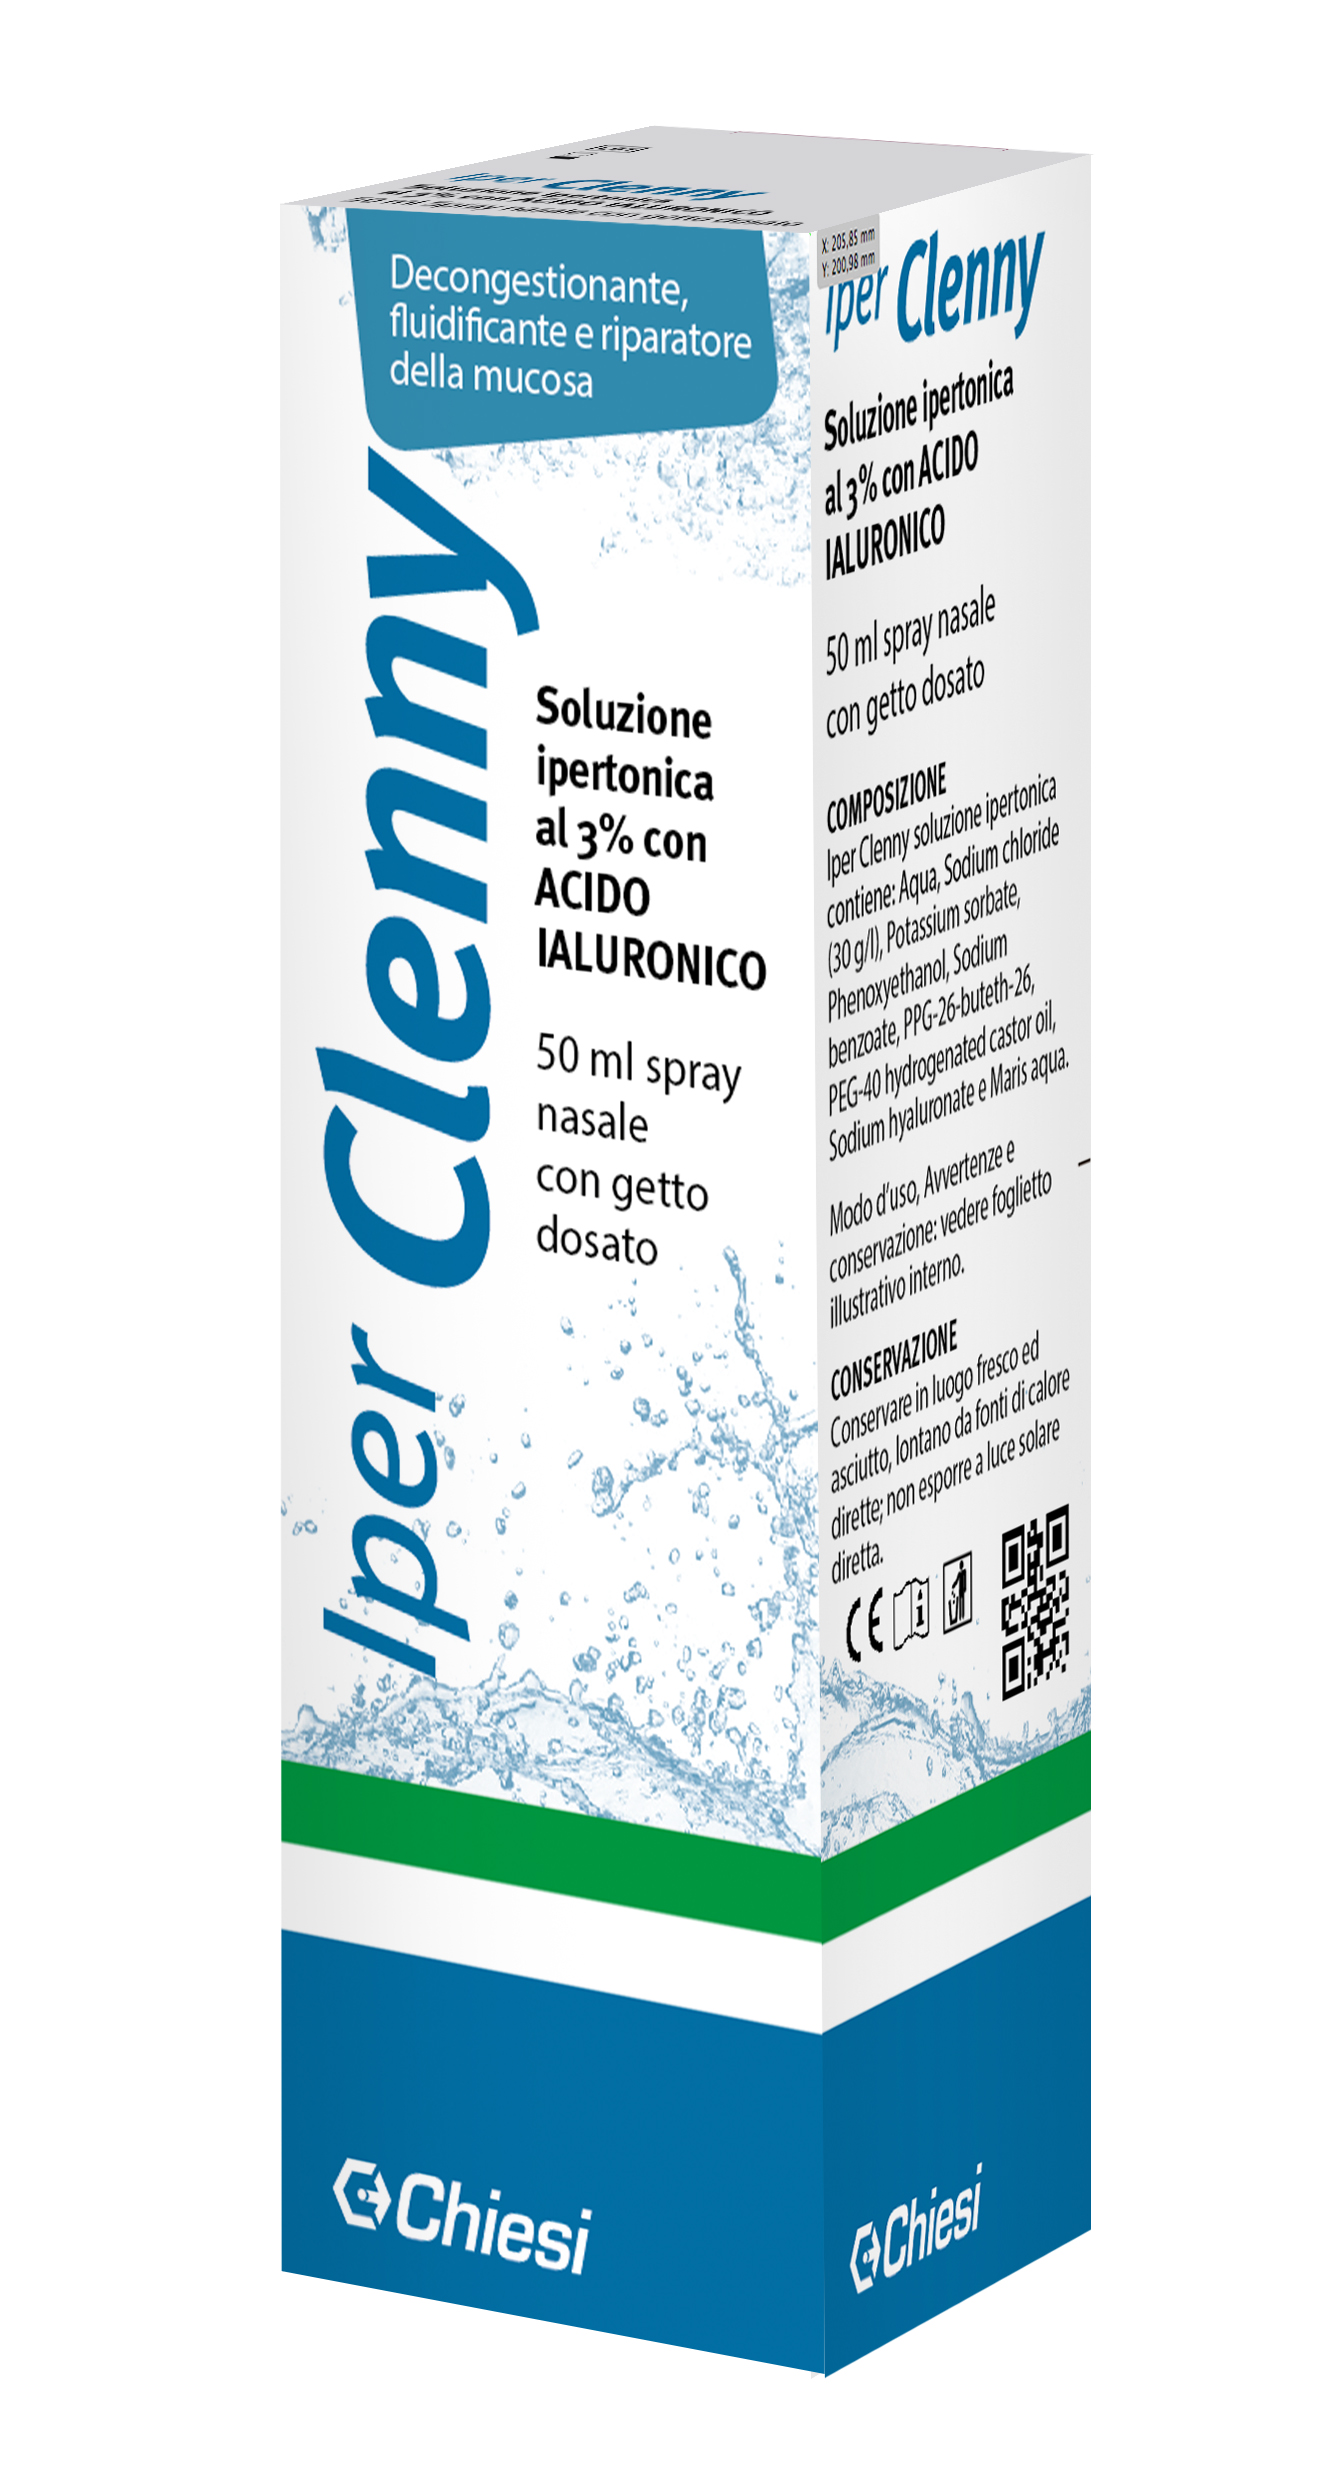 Immagine della confezione di Iper Clenny spray nasale, dispositivo medico di Chiesi Farmaceutici S.p.A.